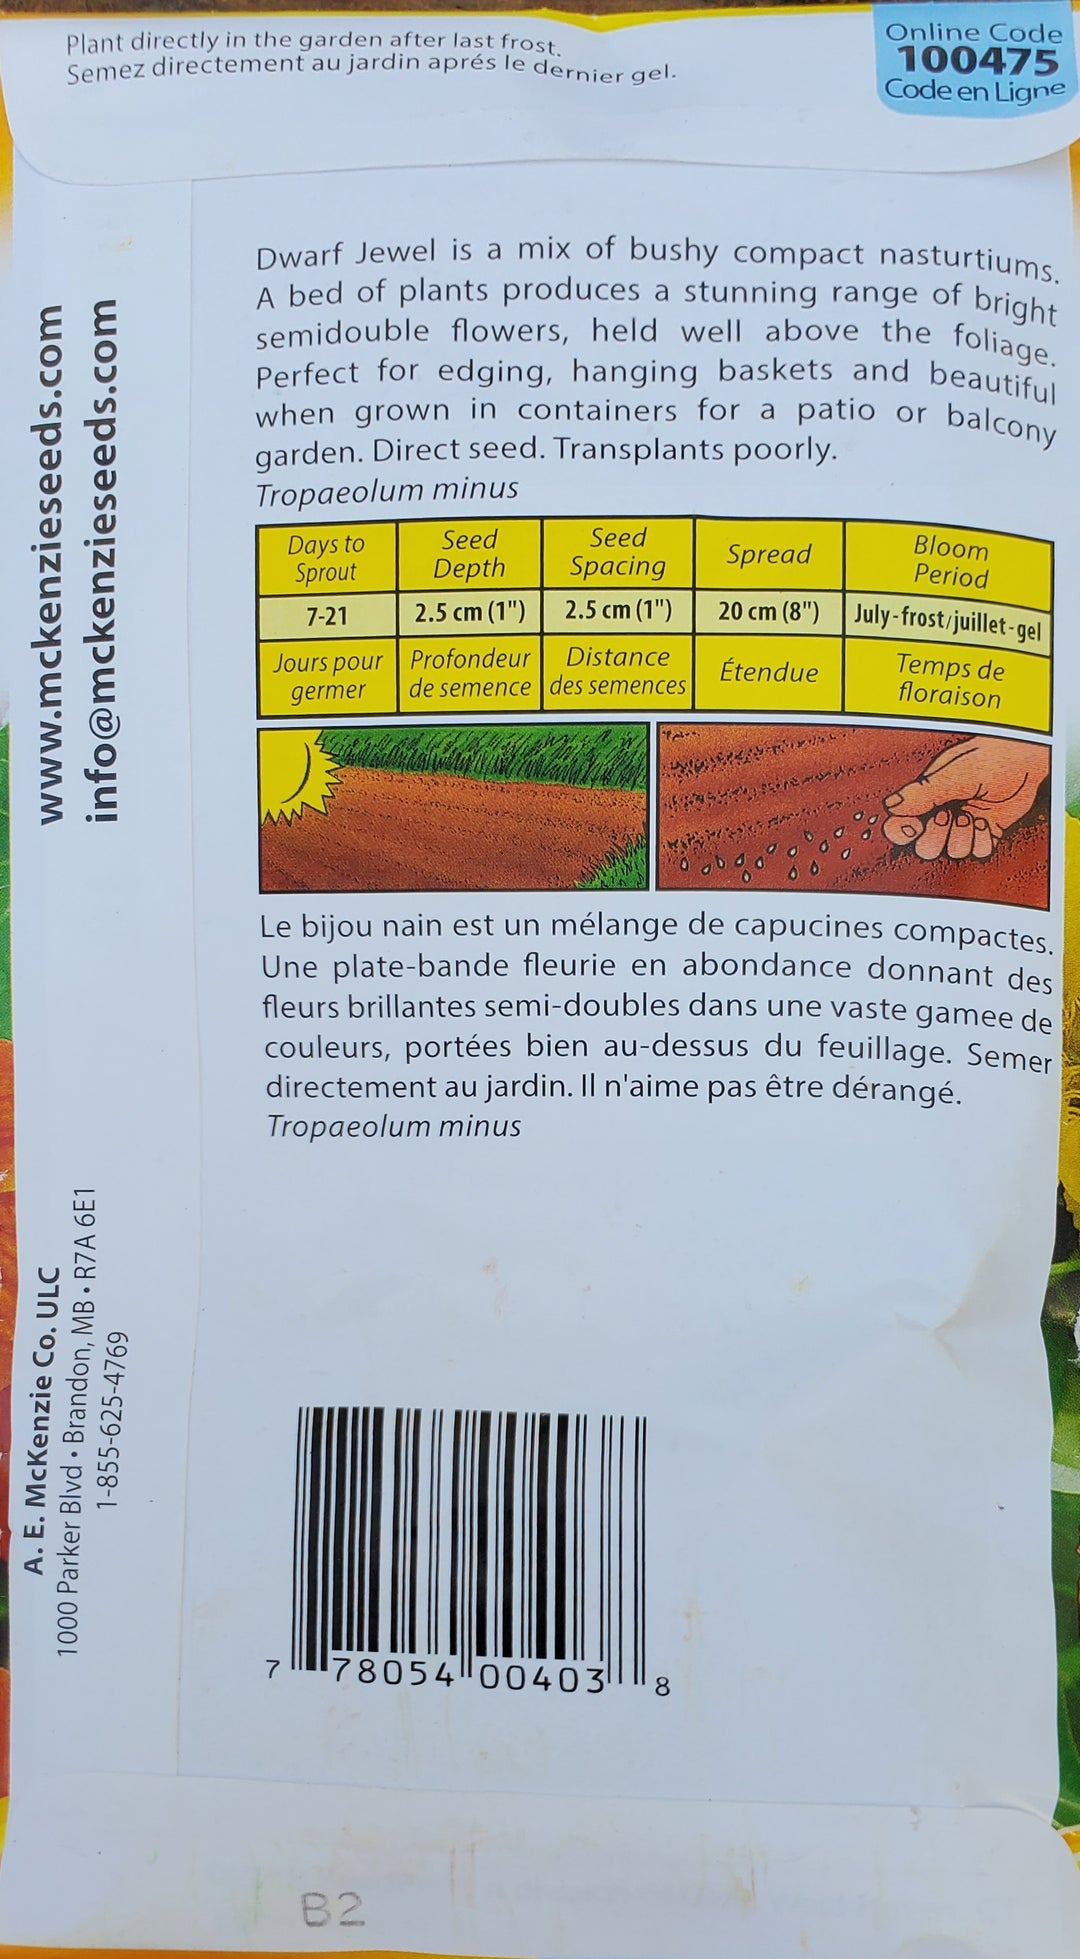 Nasturtium Seeds - Jewel Mix